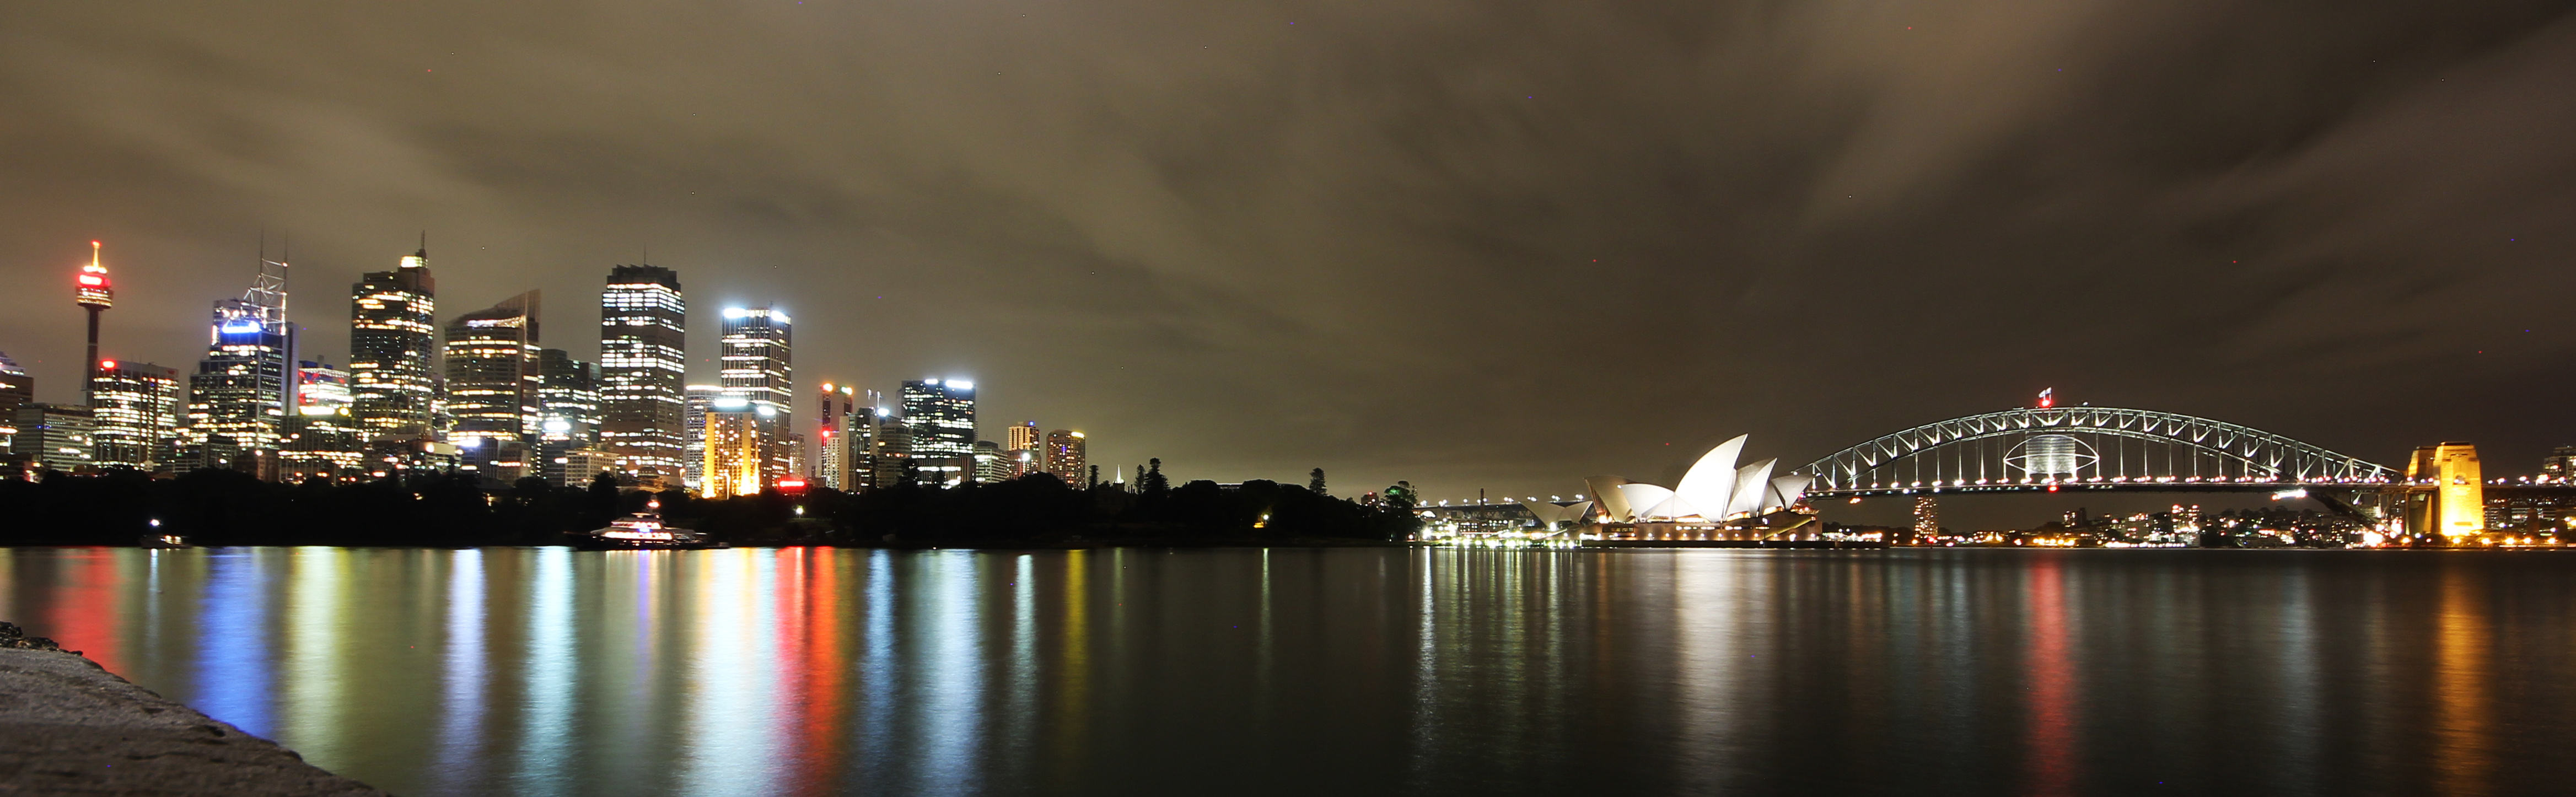 Sydney Harbor at Night